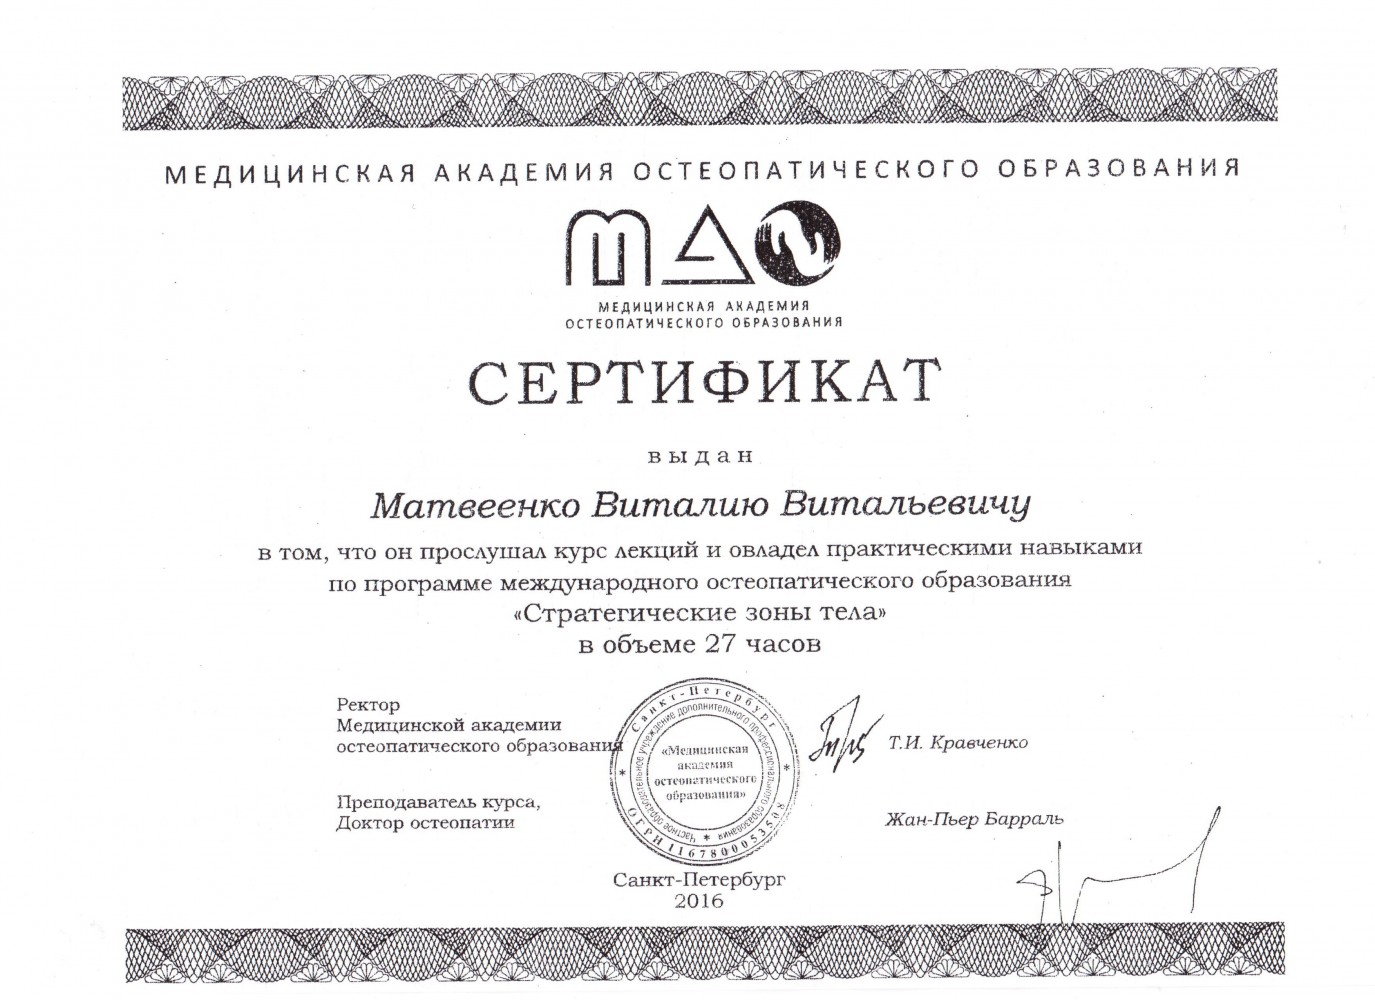 сертификат, фото №8